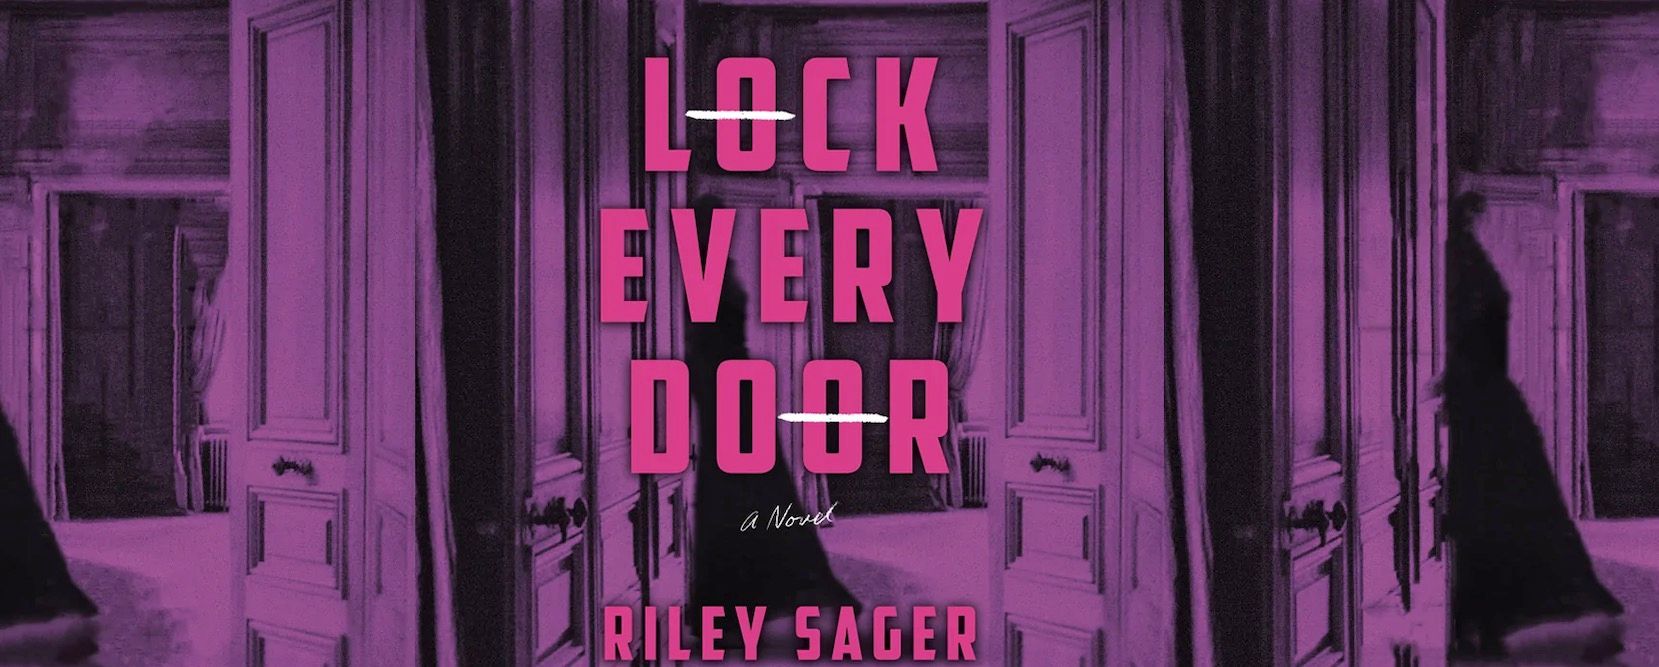 Lock Every Door Book Review